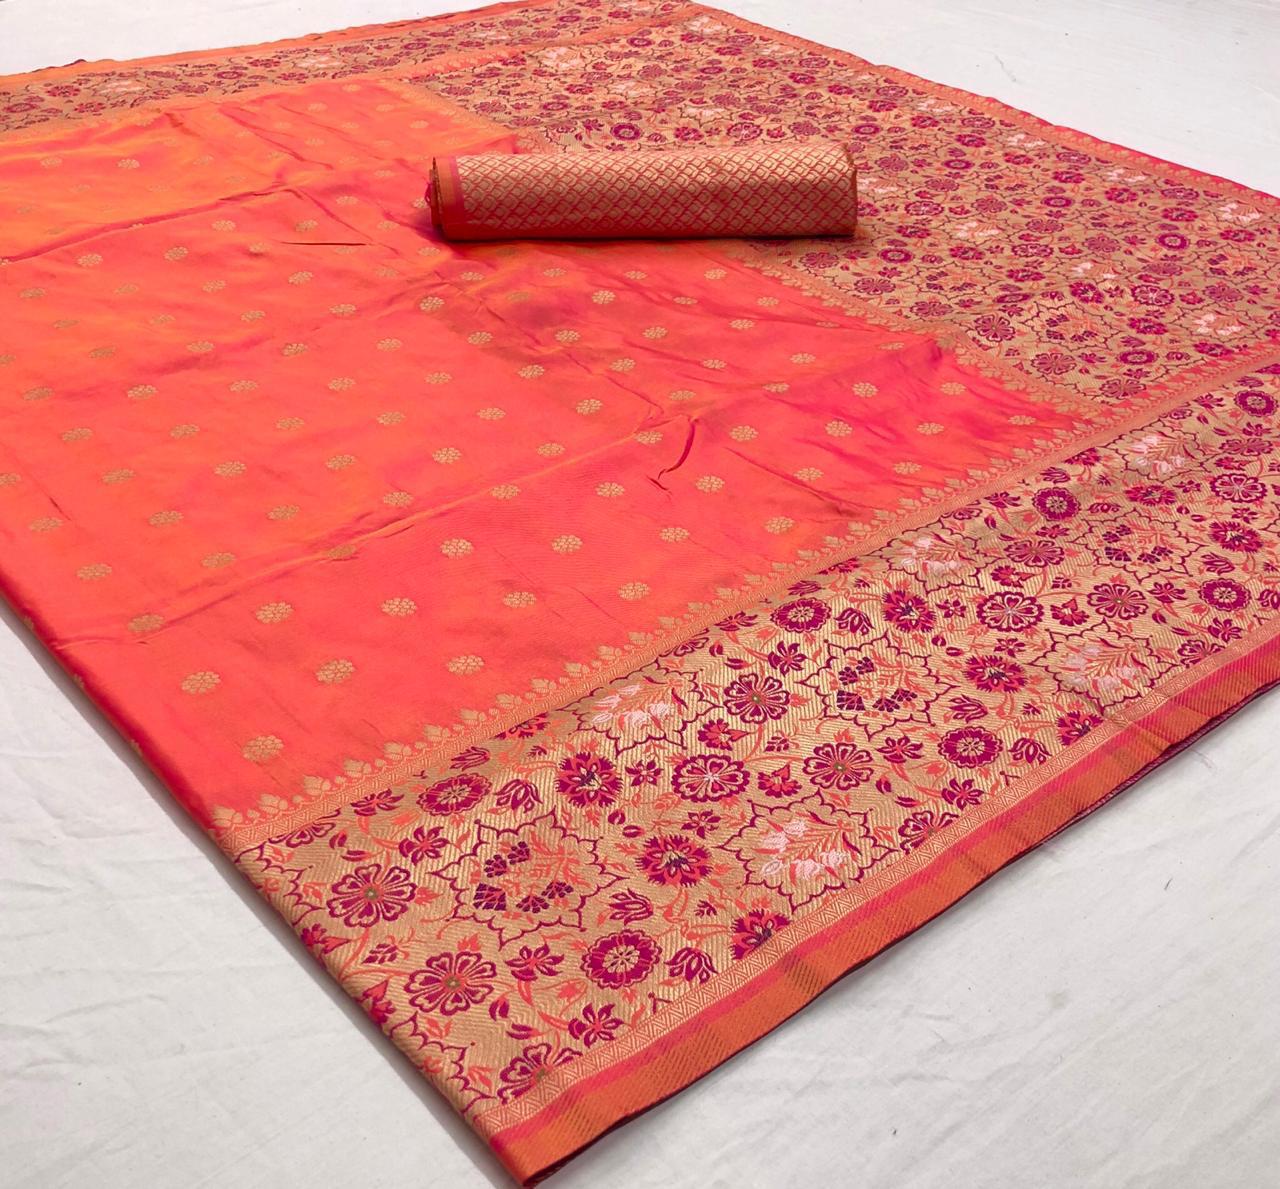 Rajtex Fabrics Karmala Silk 89012